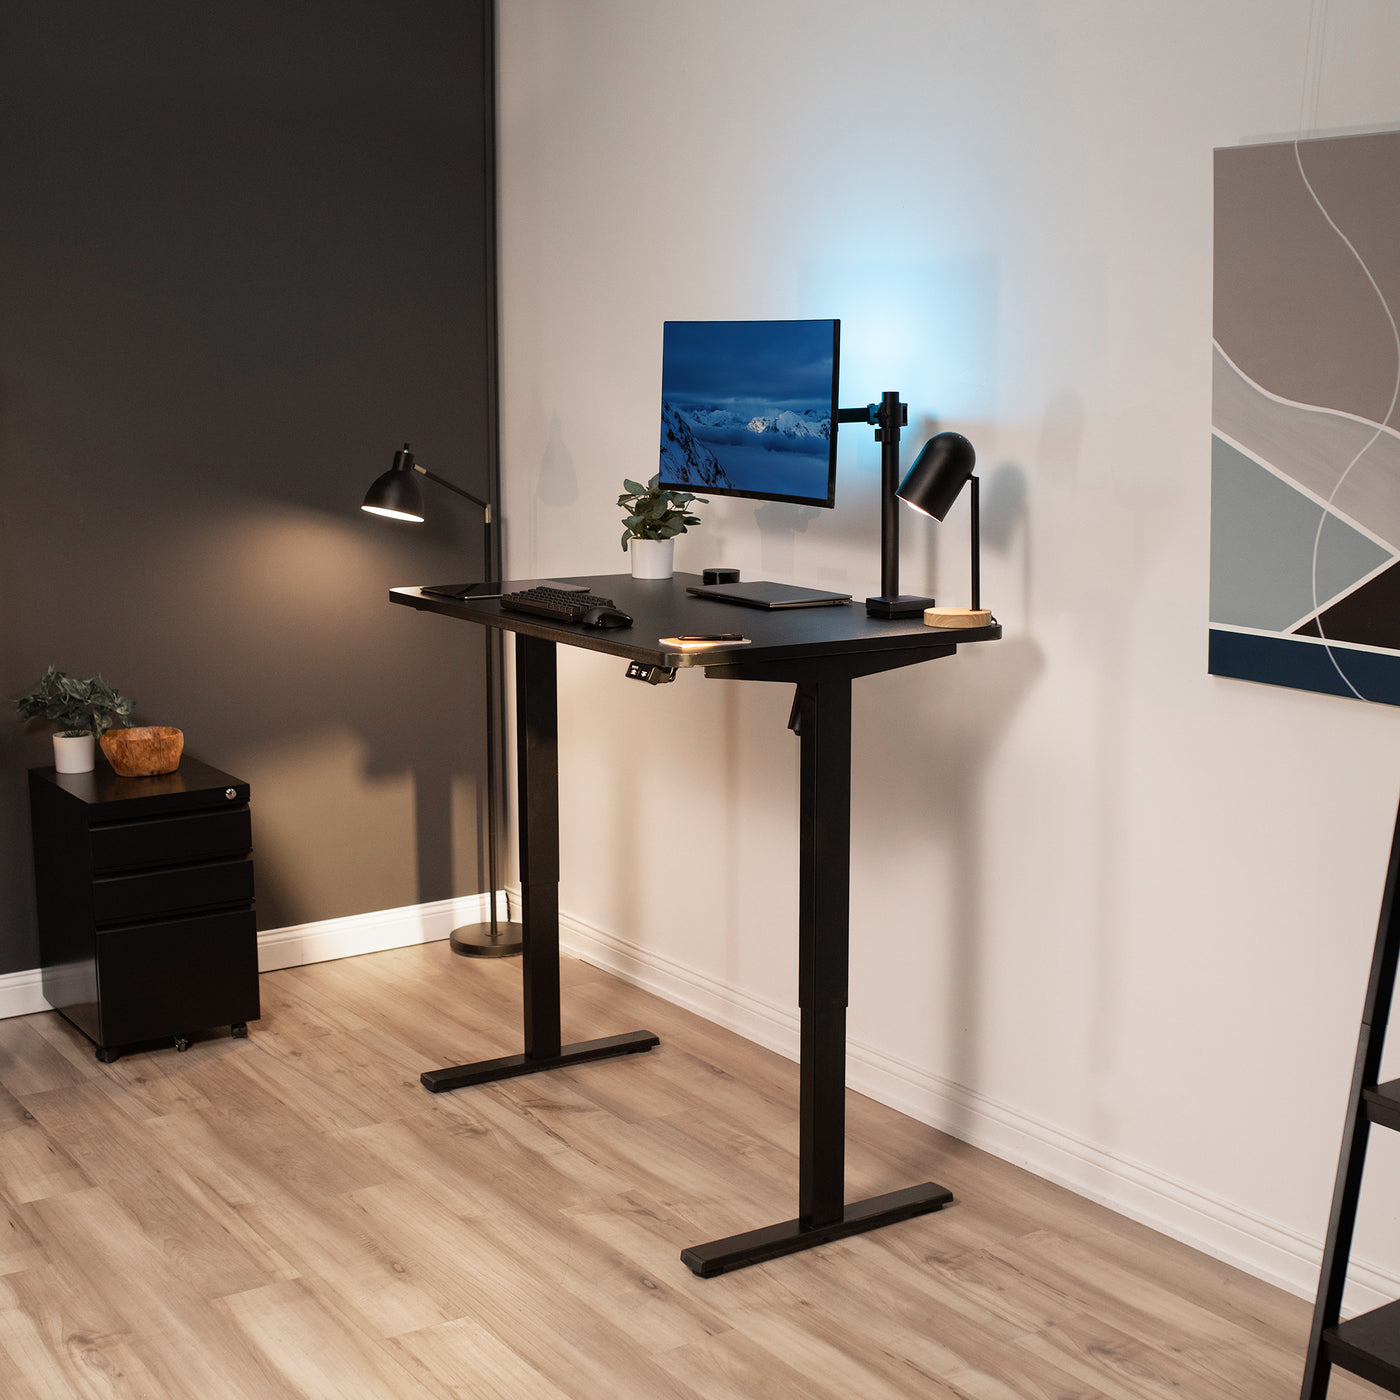 Adjustable standing workstation desk for a modern office workspace.